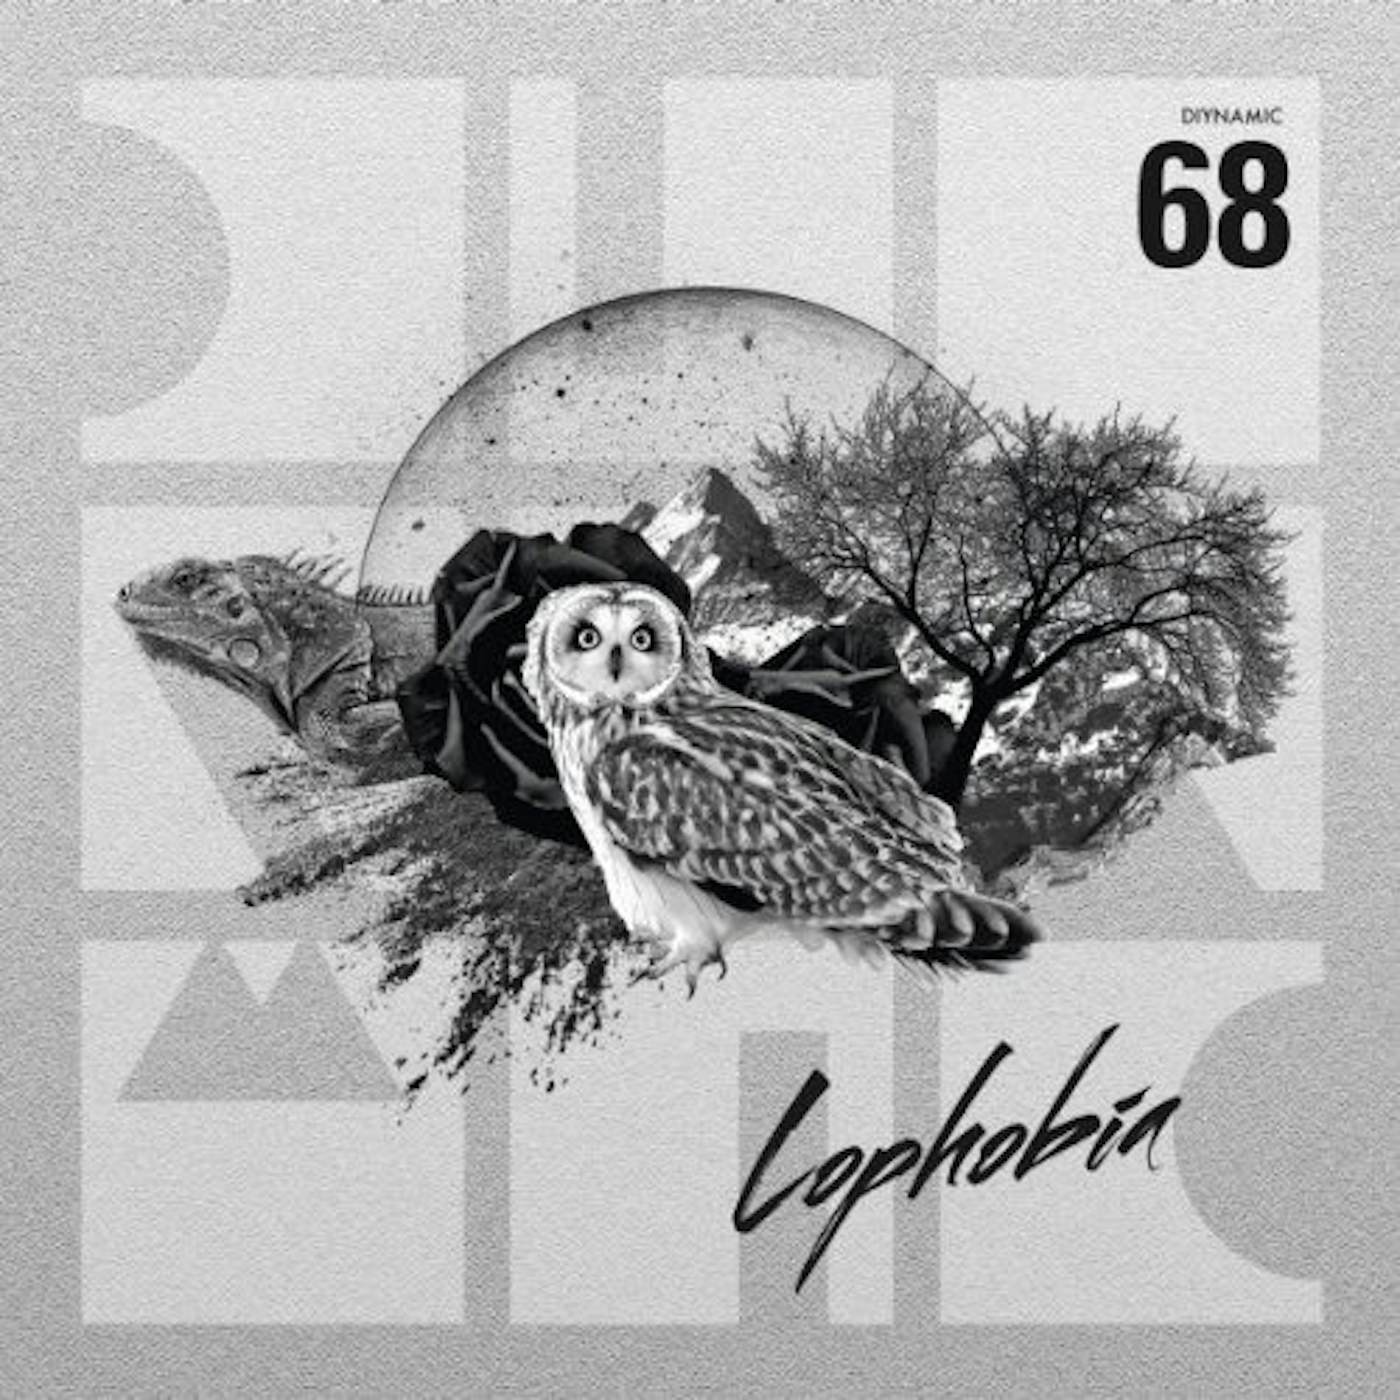 Adriatique Lophobia Vinyl Record